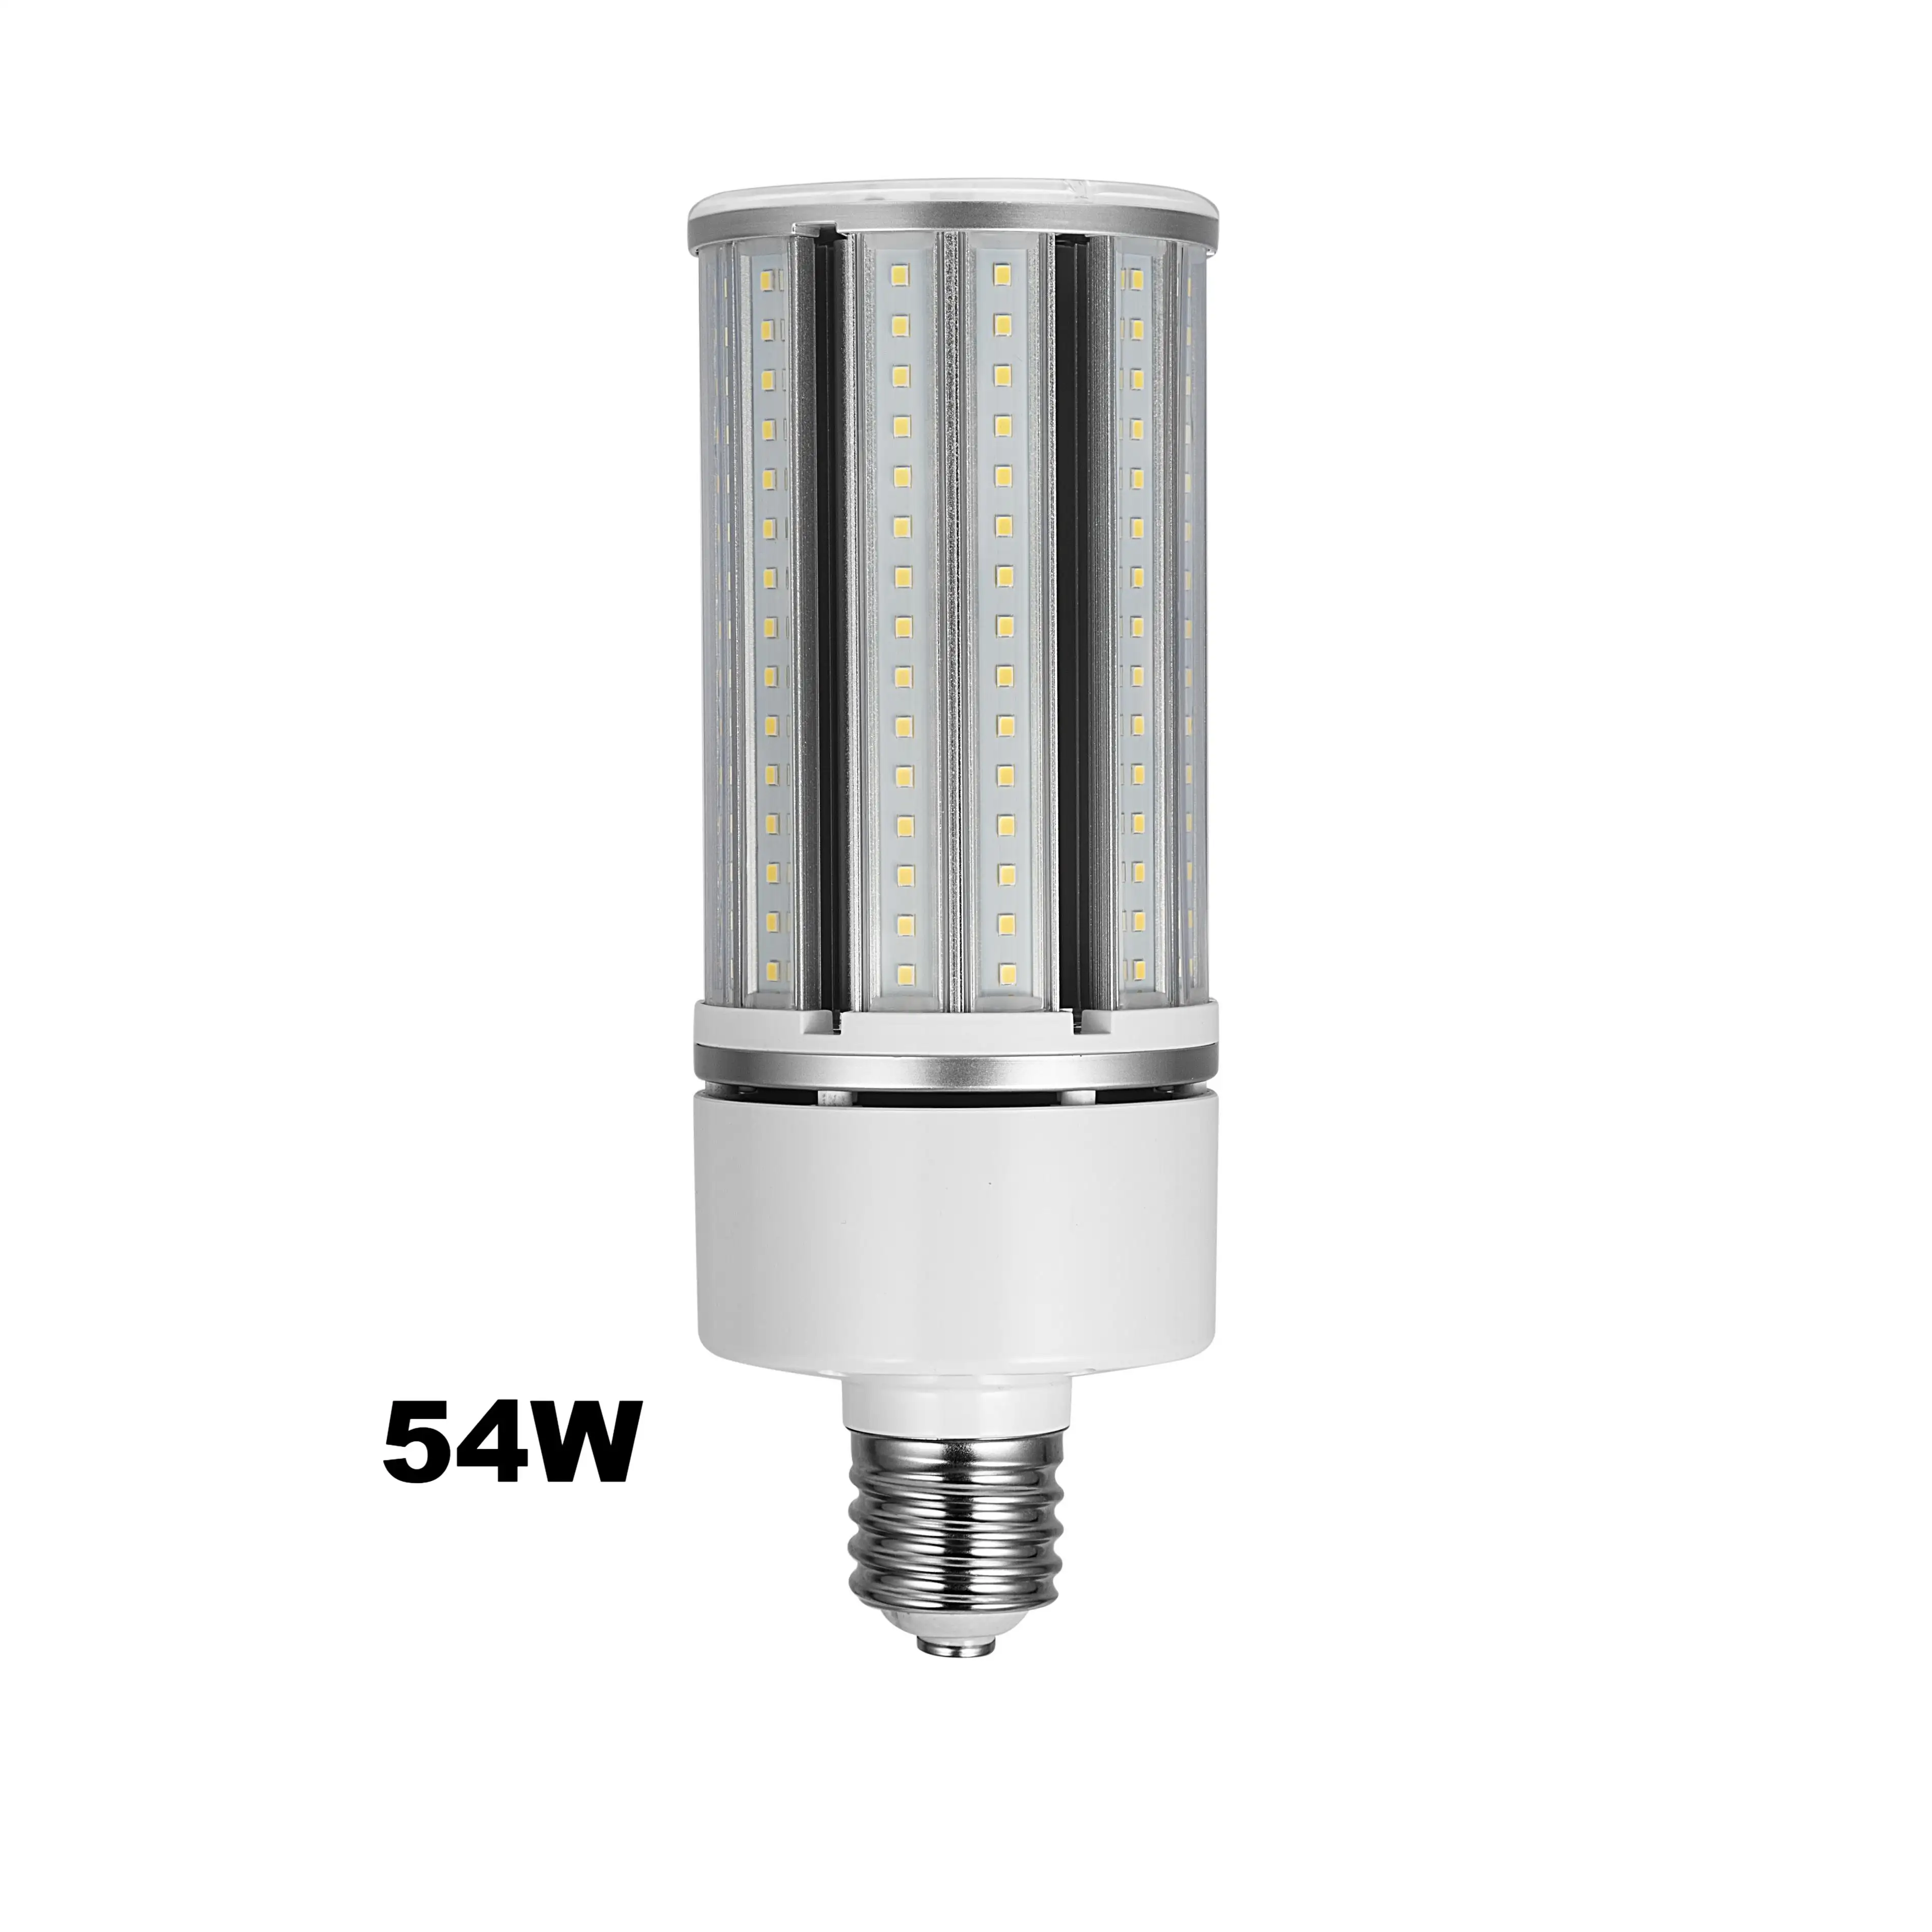 뜨거운 판매 54W LED 조명기구 LED 램프 창고 LED 옥수수 빛 야외 램프 전구 도매